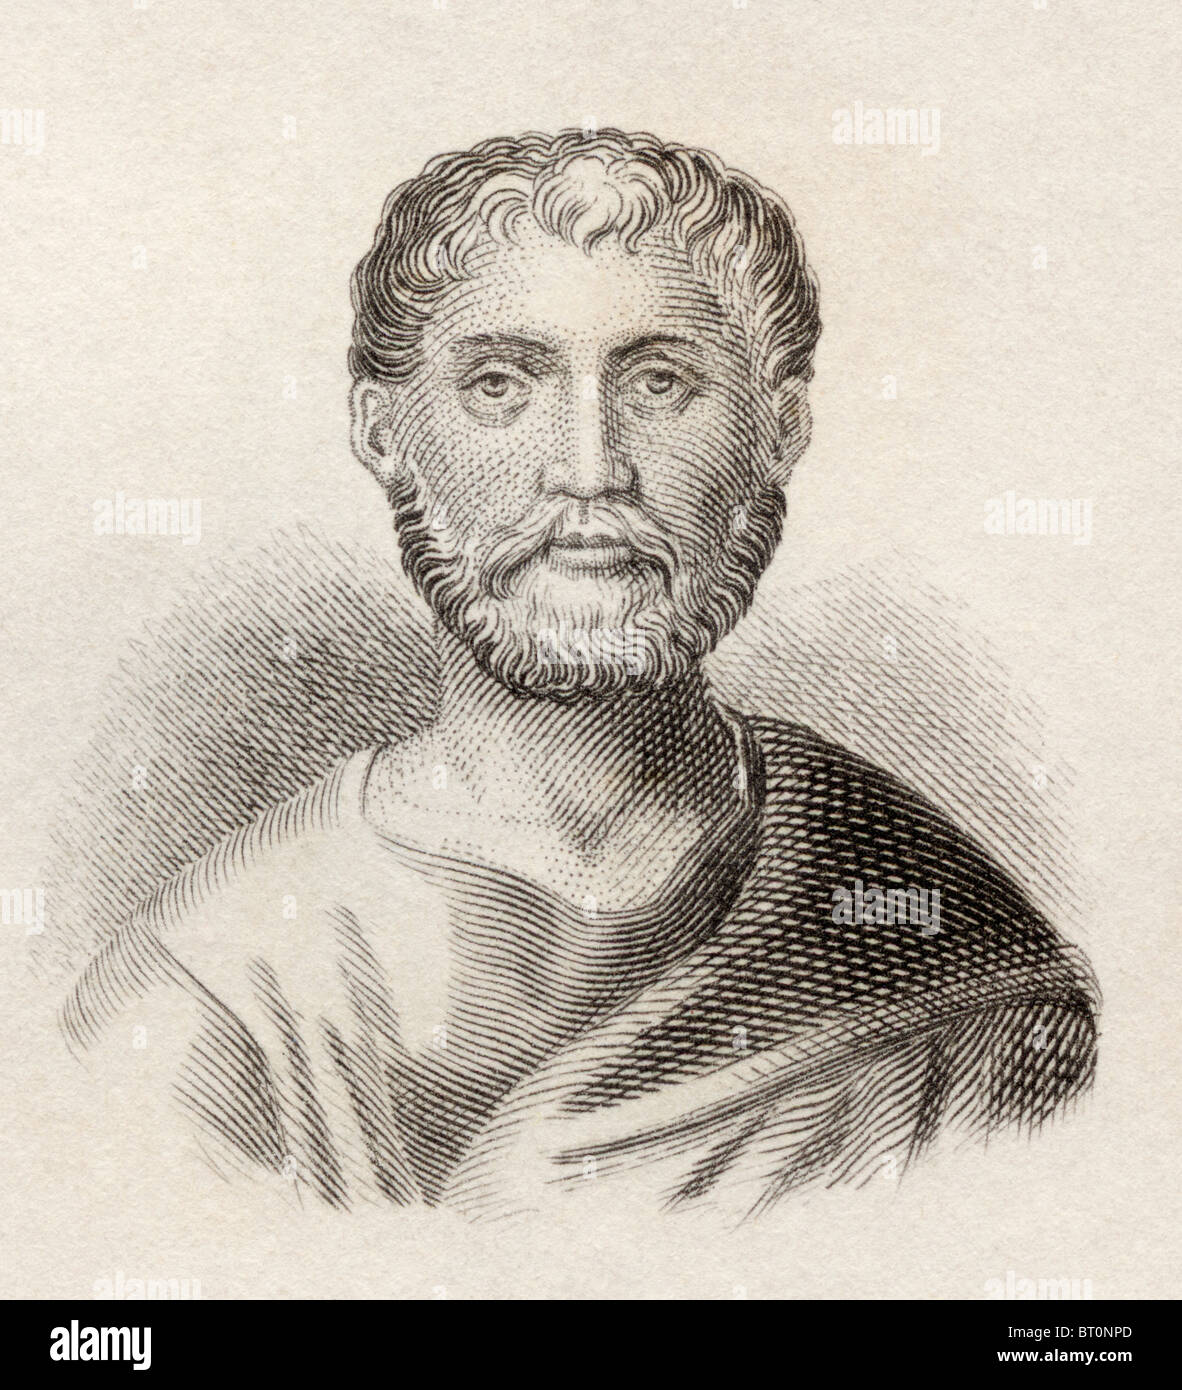 Publius Terentius Afer ca. 195/185 bis 159 v. Chr. Uralter Römischer Dramatiker. Auf Englisch als Terence bekannt. Stockfoto